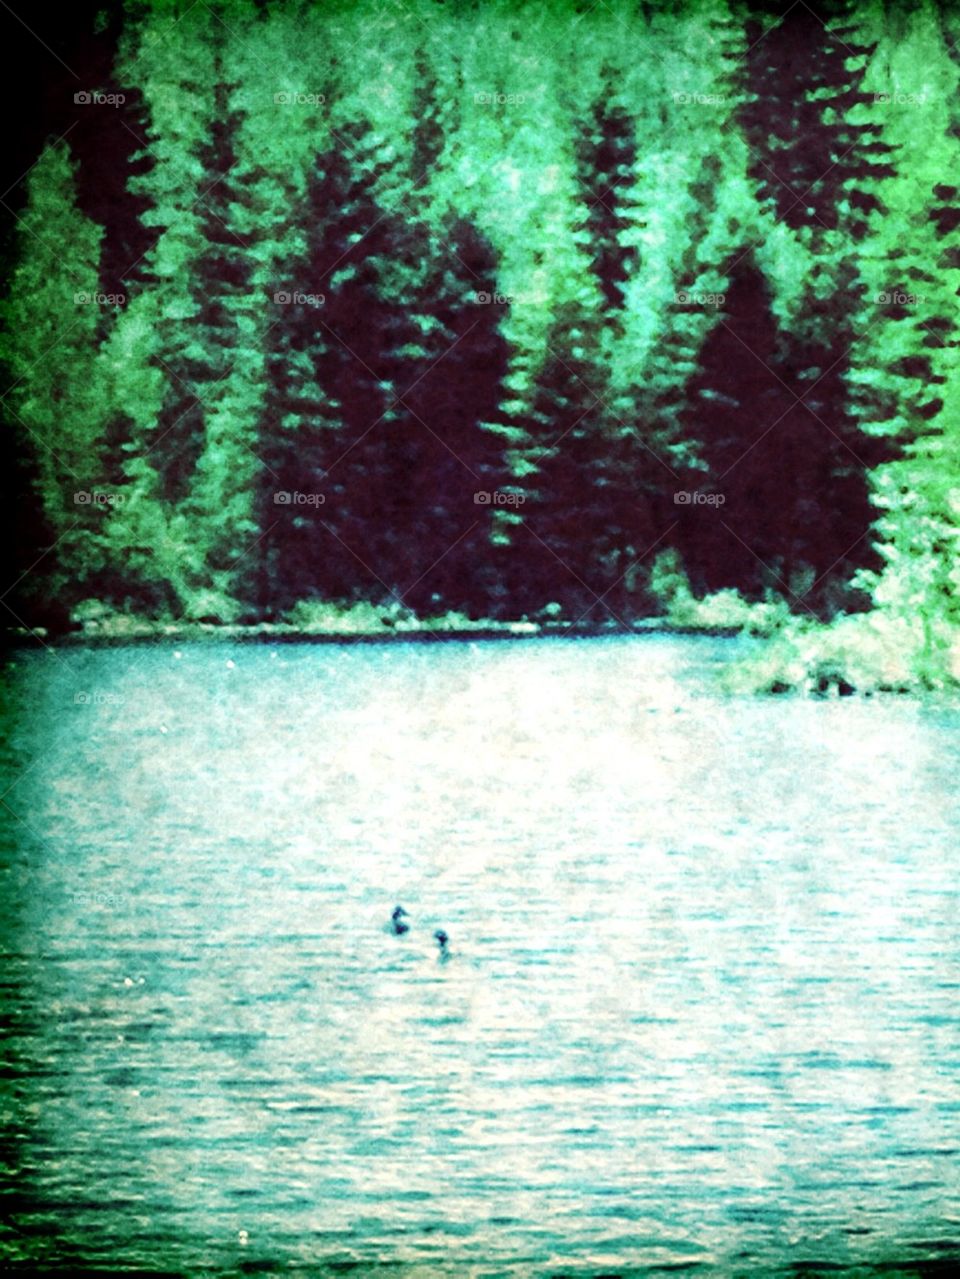 Ducks on Pond